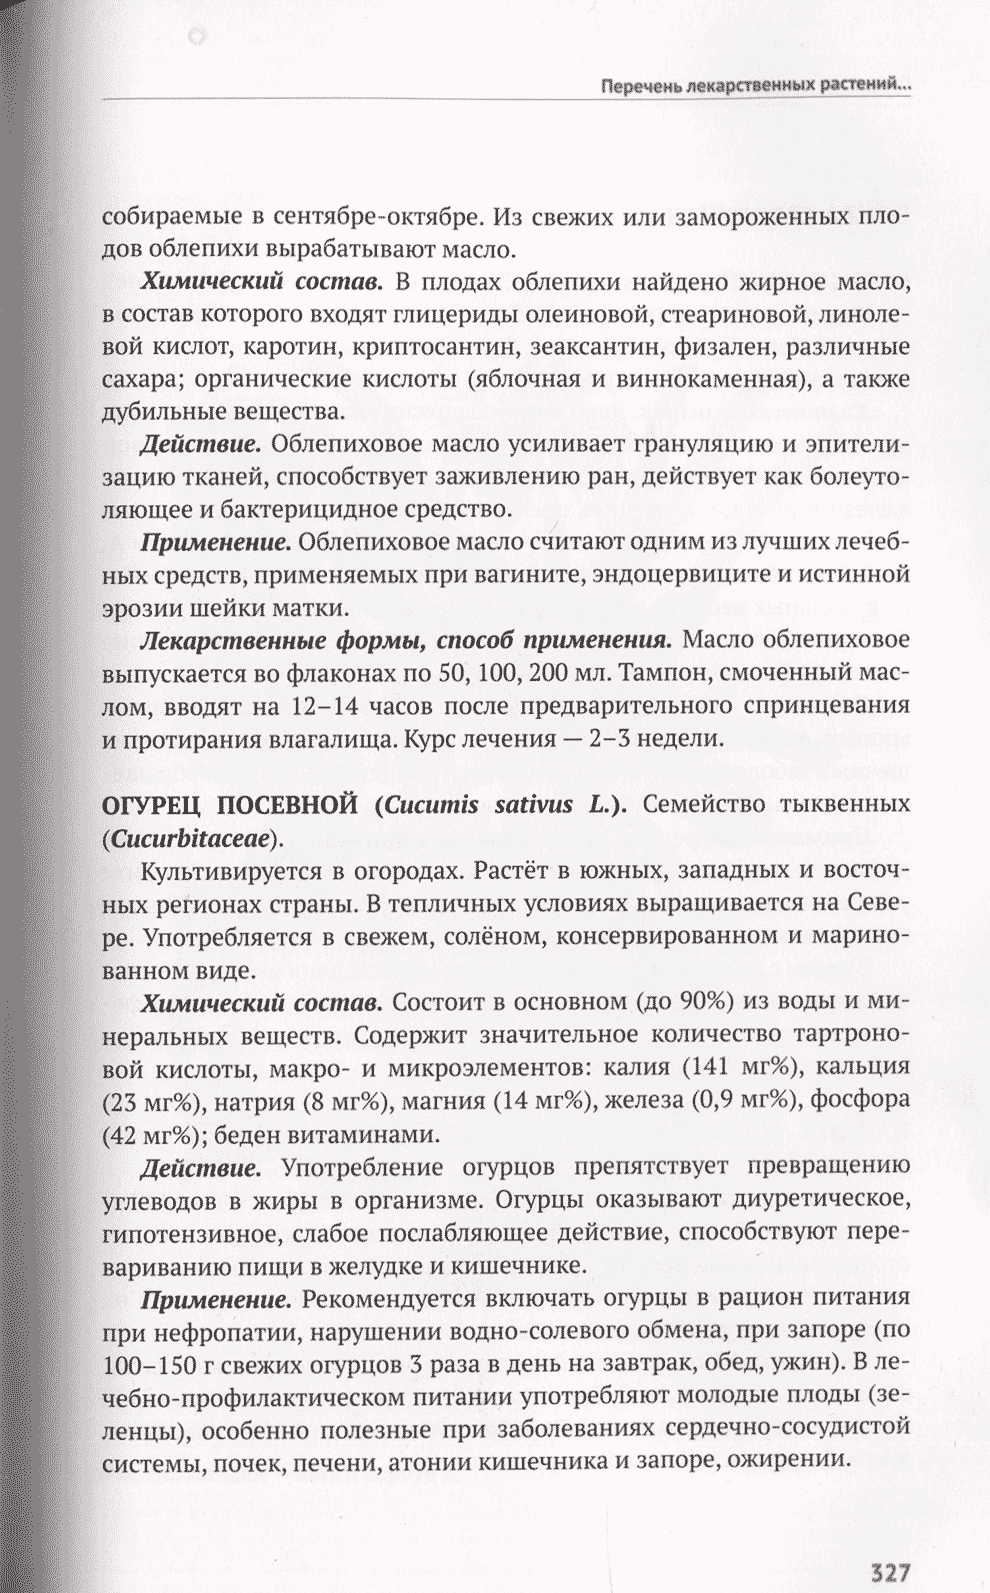 Пример страницы из книги "Лекарственные растения в репродуктивной медицине" - В. Е. Радзинский, О. И. Климова, С. В. Орлова